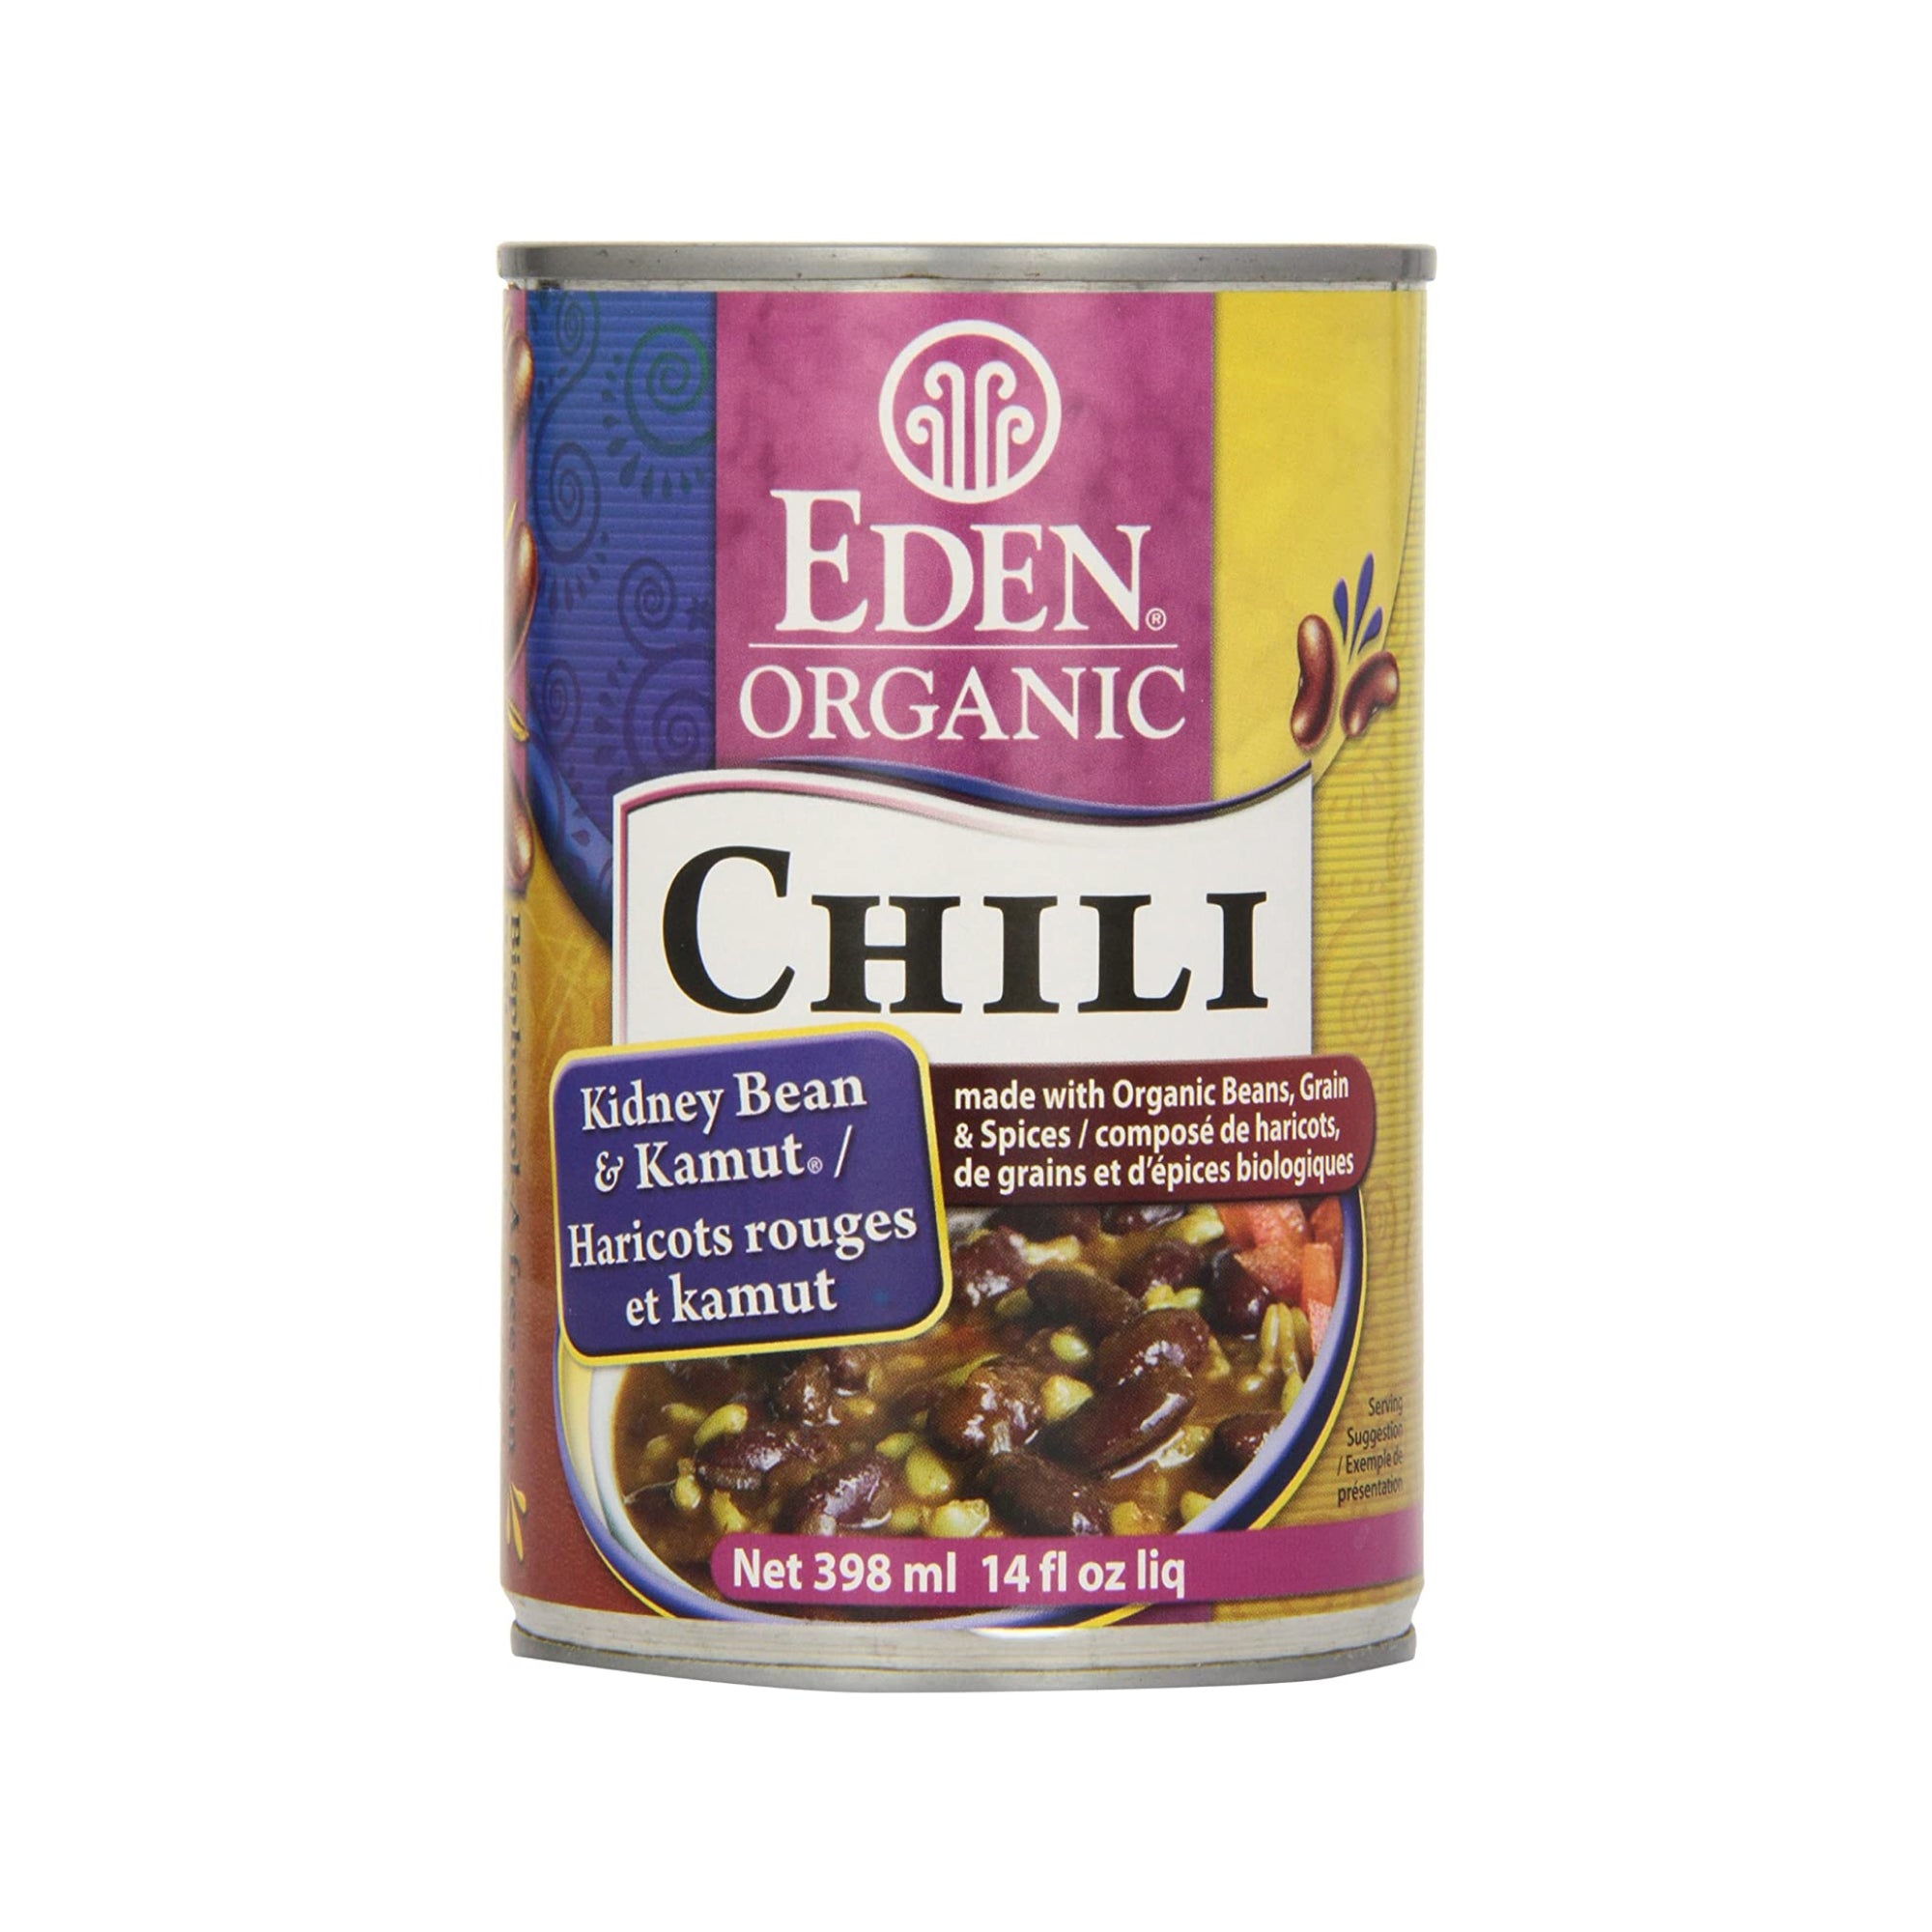 Eden Organic Chili Kidney Beans & Kamut 398ml